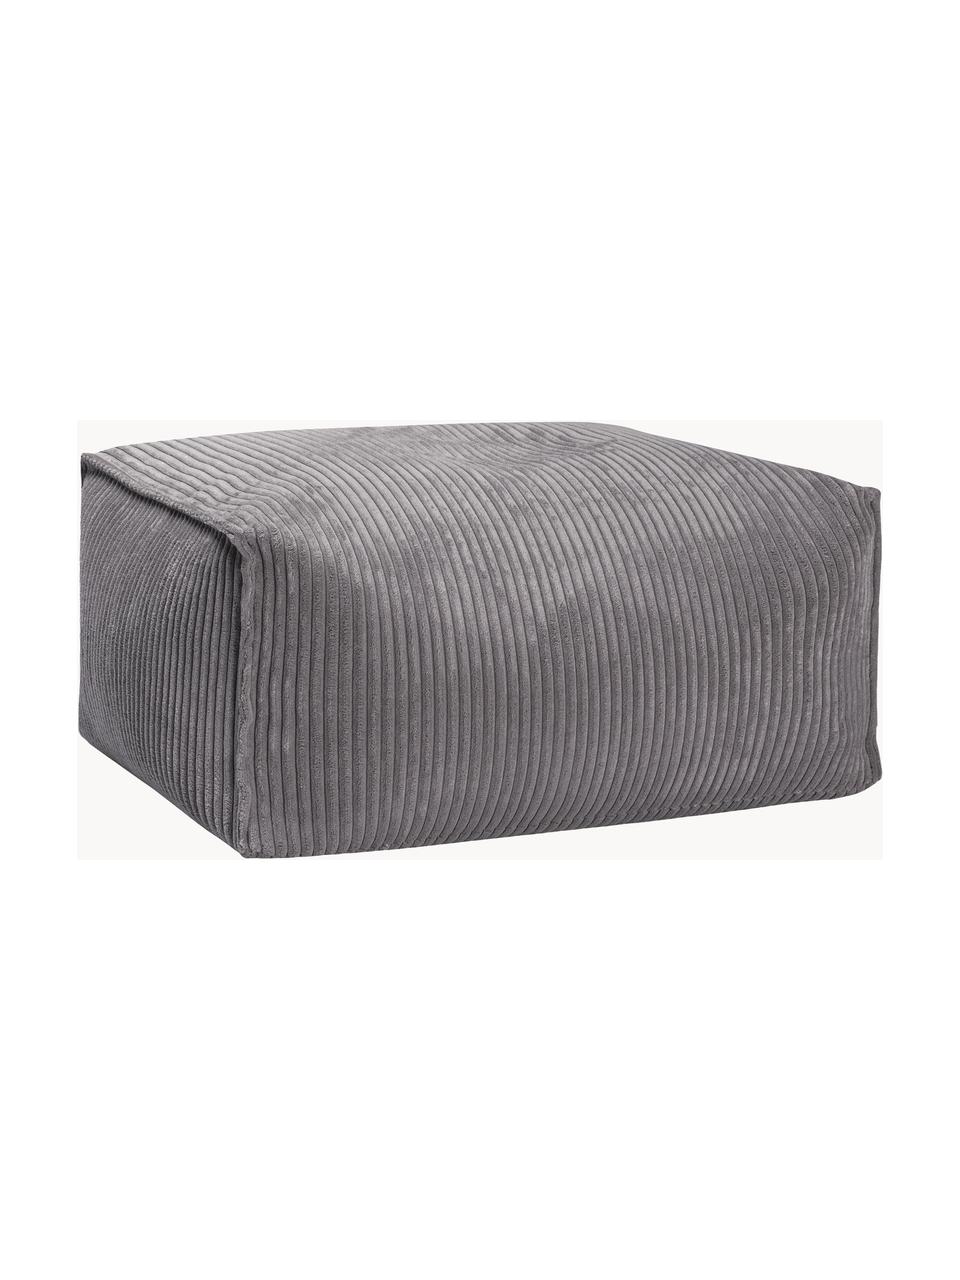 Poduszka podłogowa ze sztruksu Shara, Tapicerka: sztruks (100% poliester), Ciemny szary, S 65 x W 35 cm